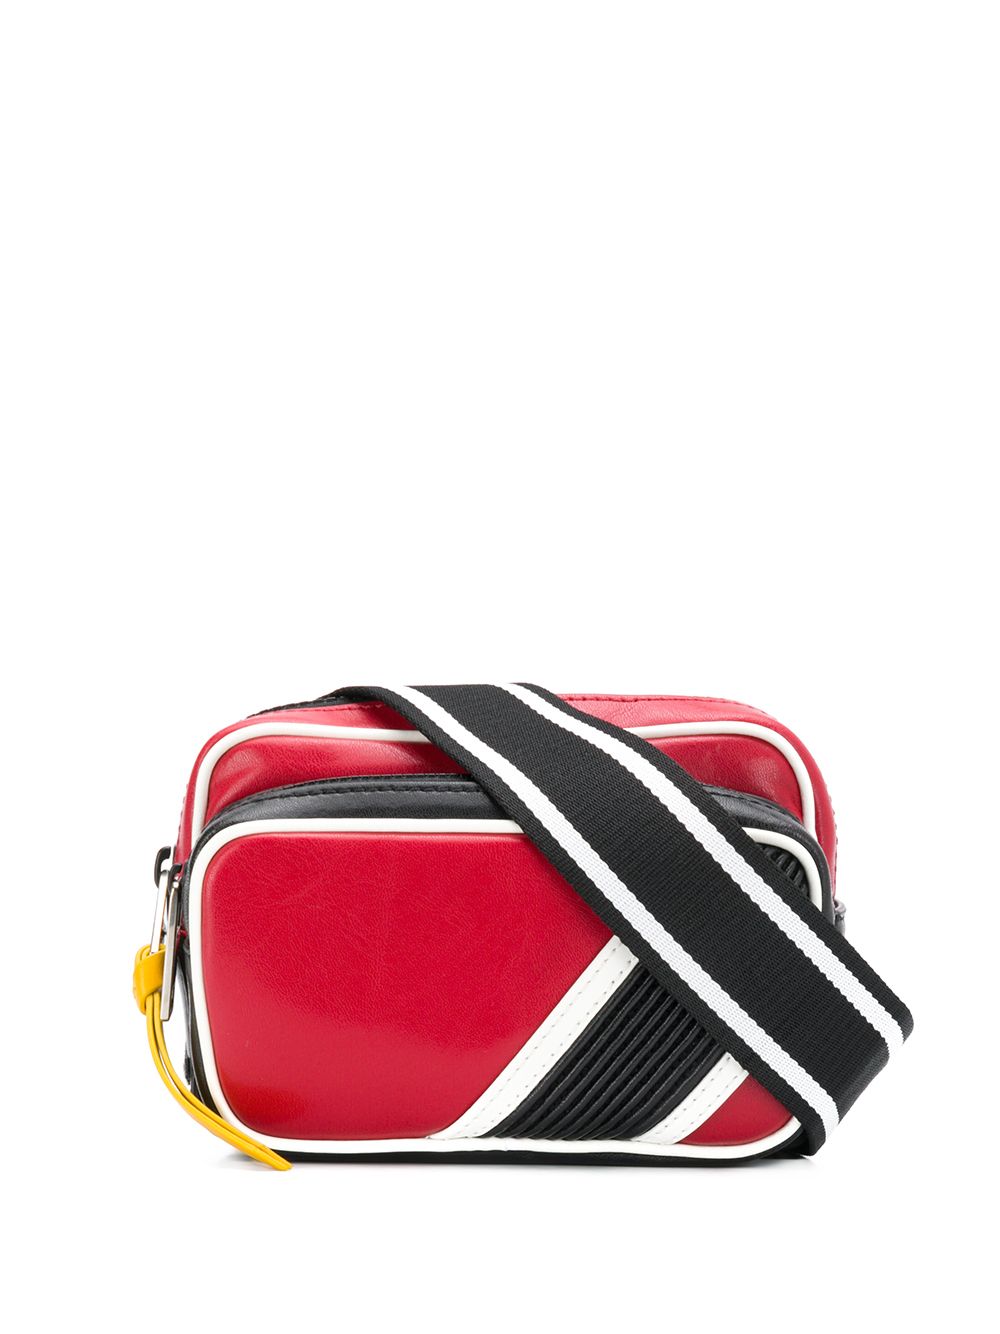 фото Givenchy поясная сумка с двумя отделами на молнии